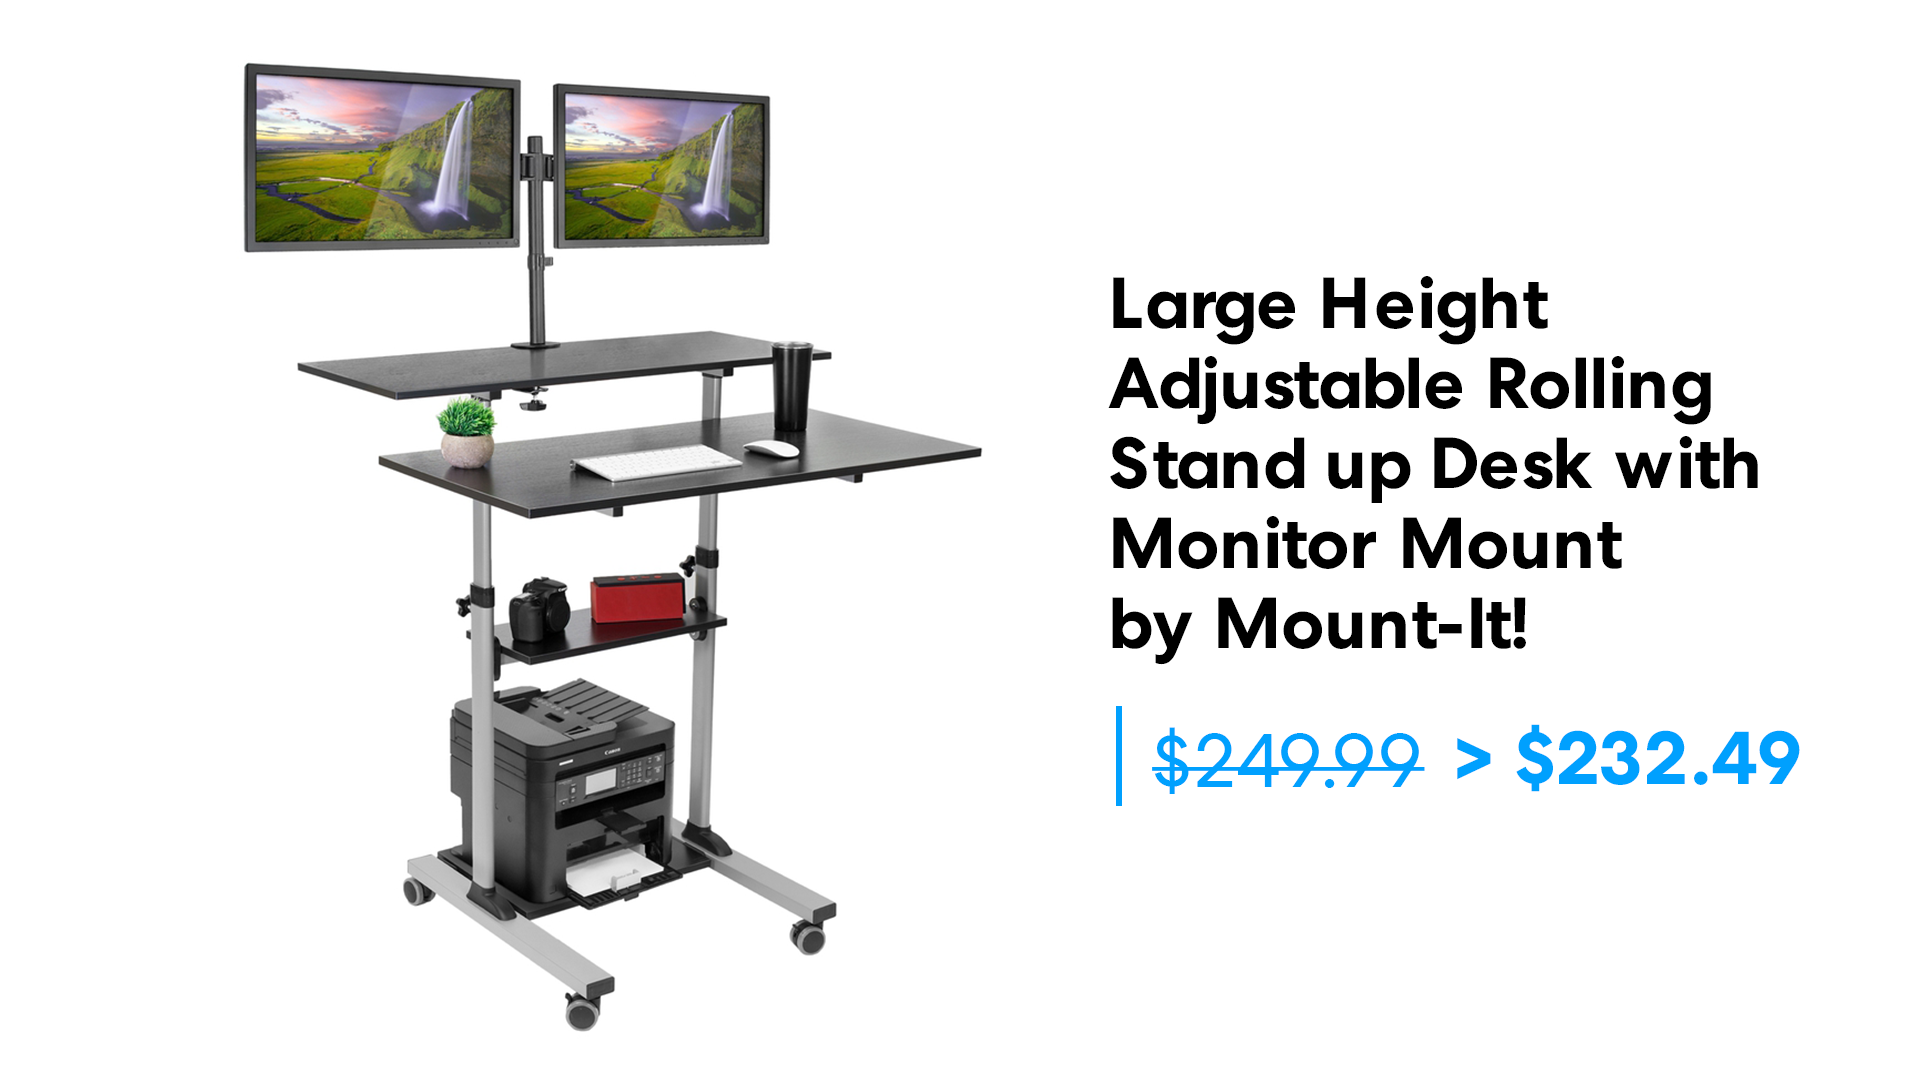 Mount-It rolling standing desk